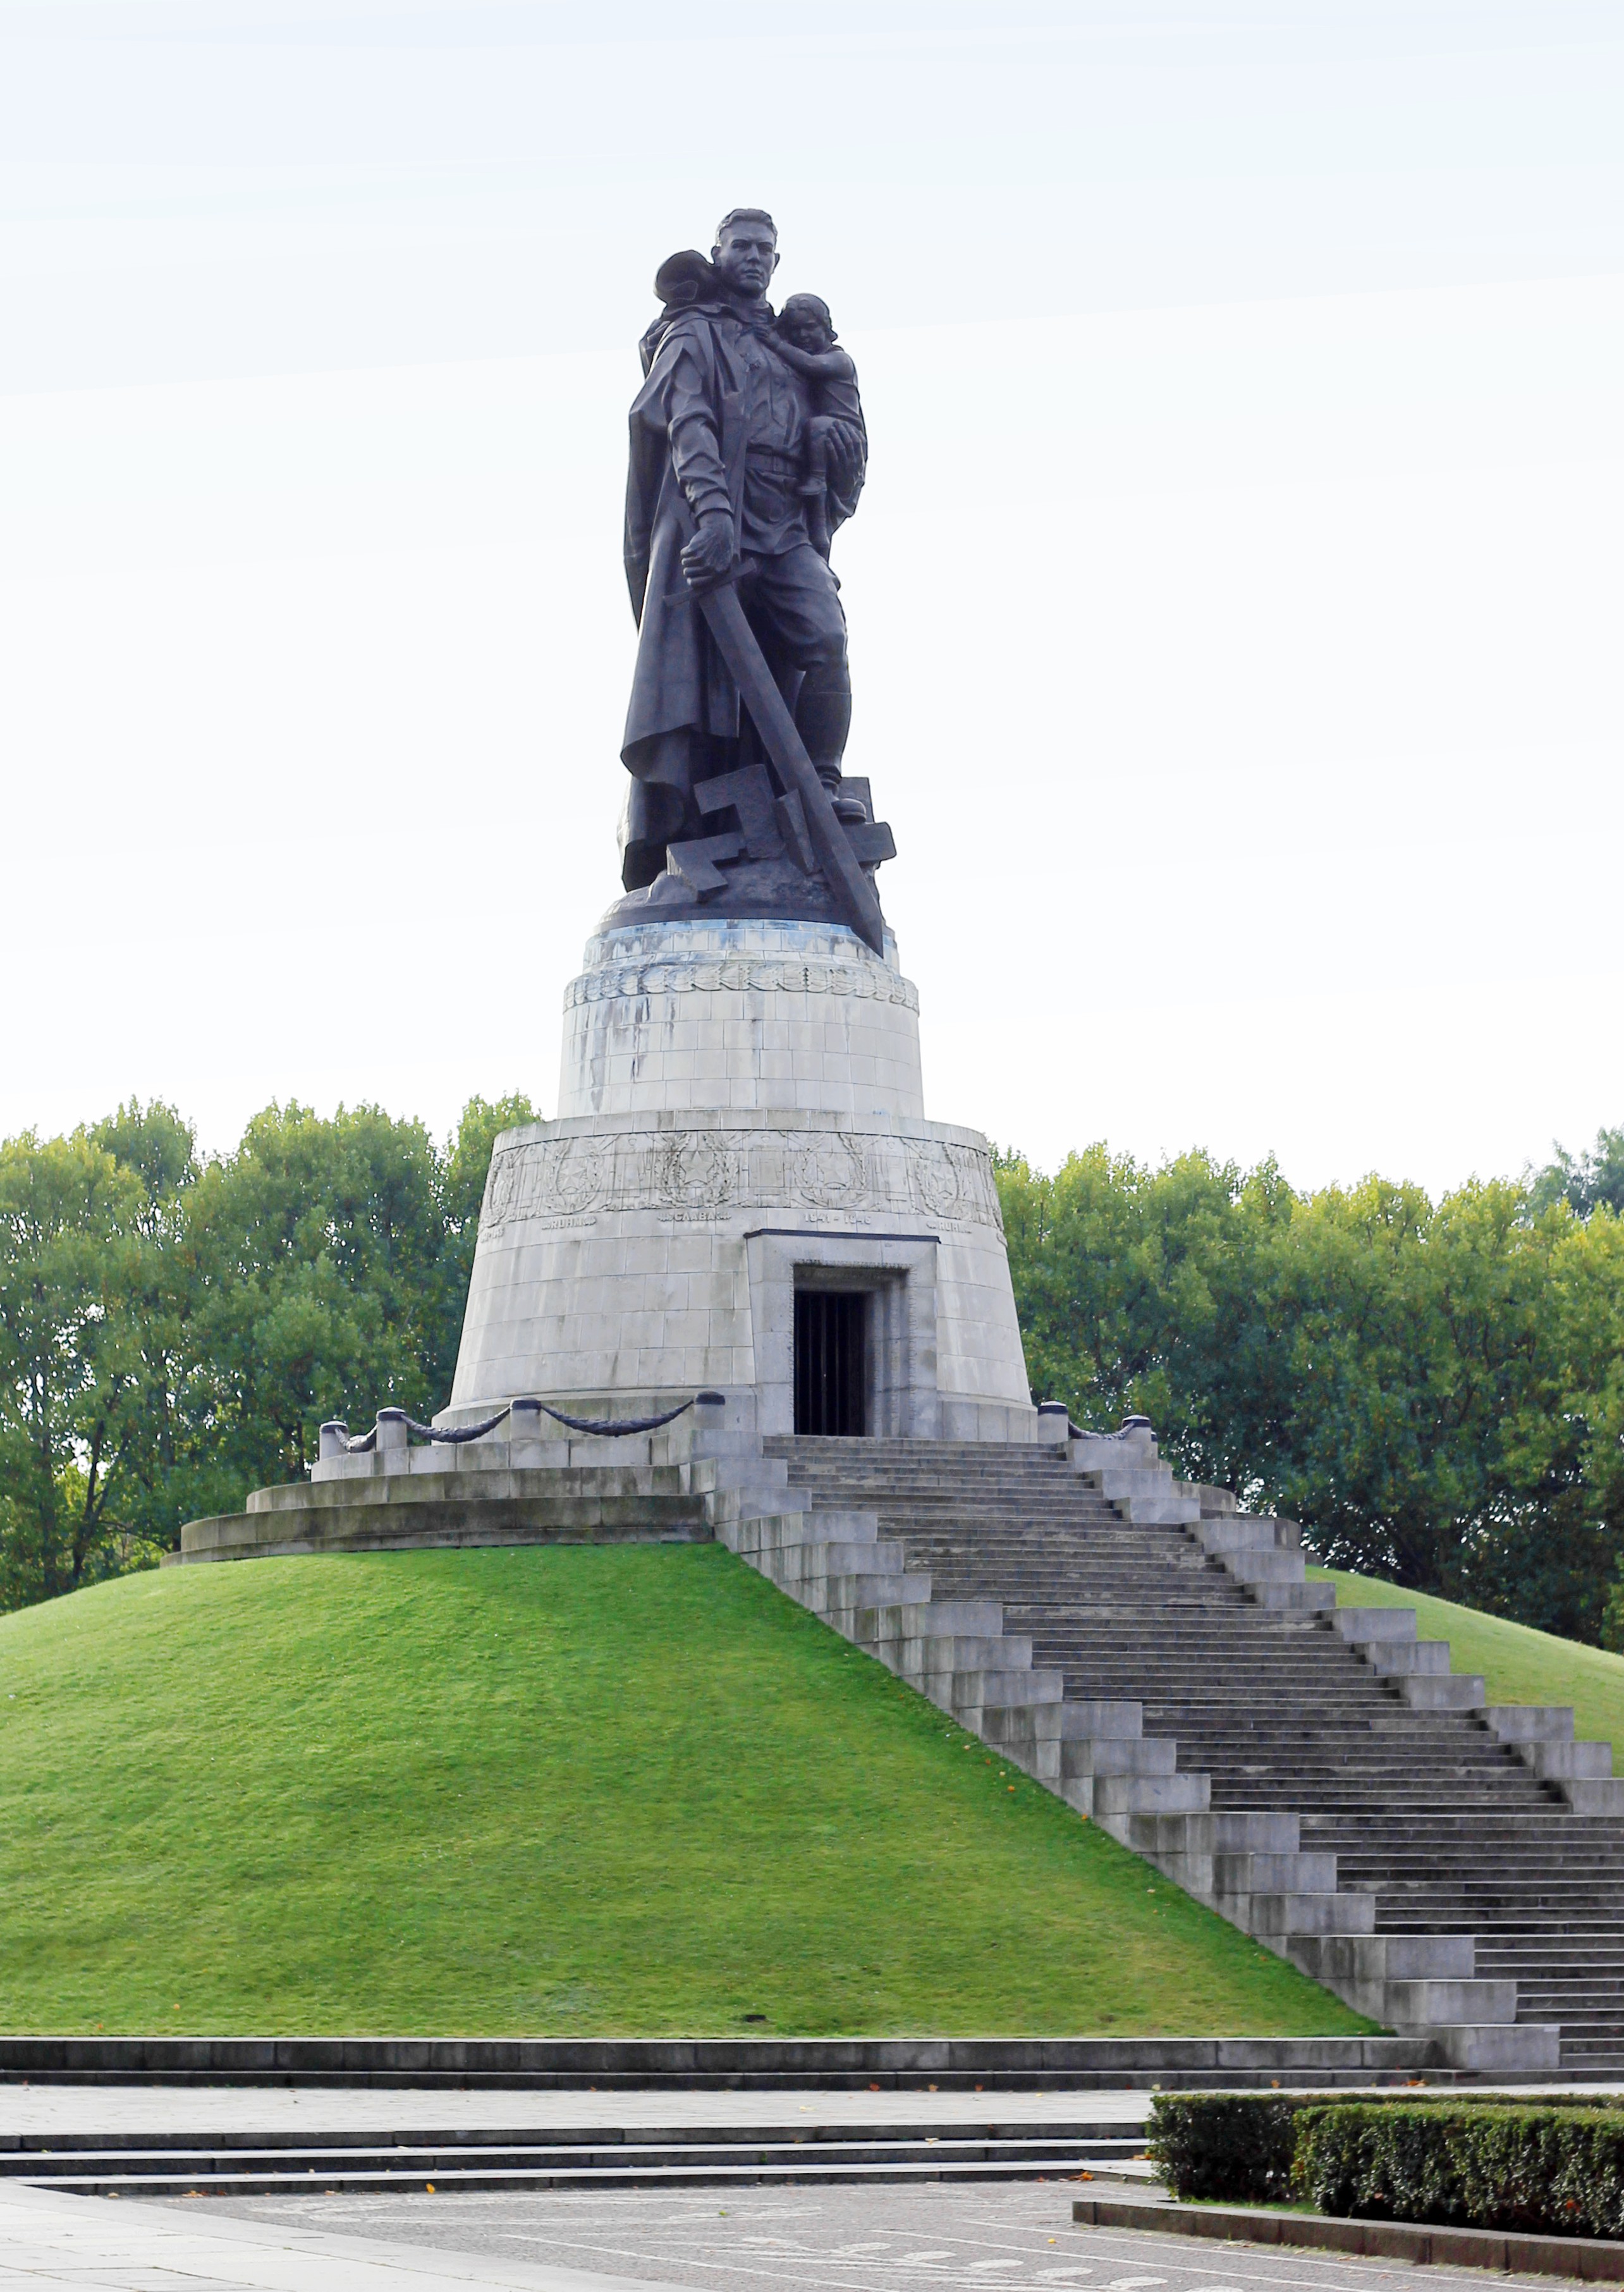 Трептов парк в берлине – памятник советским воинам в германии ⋆